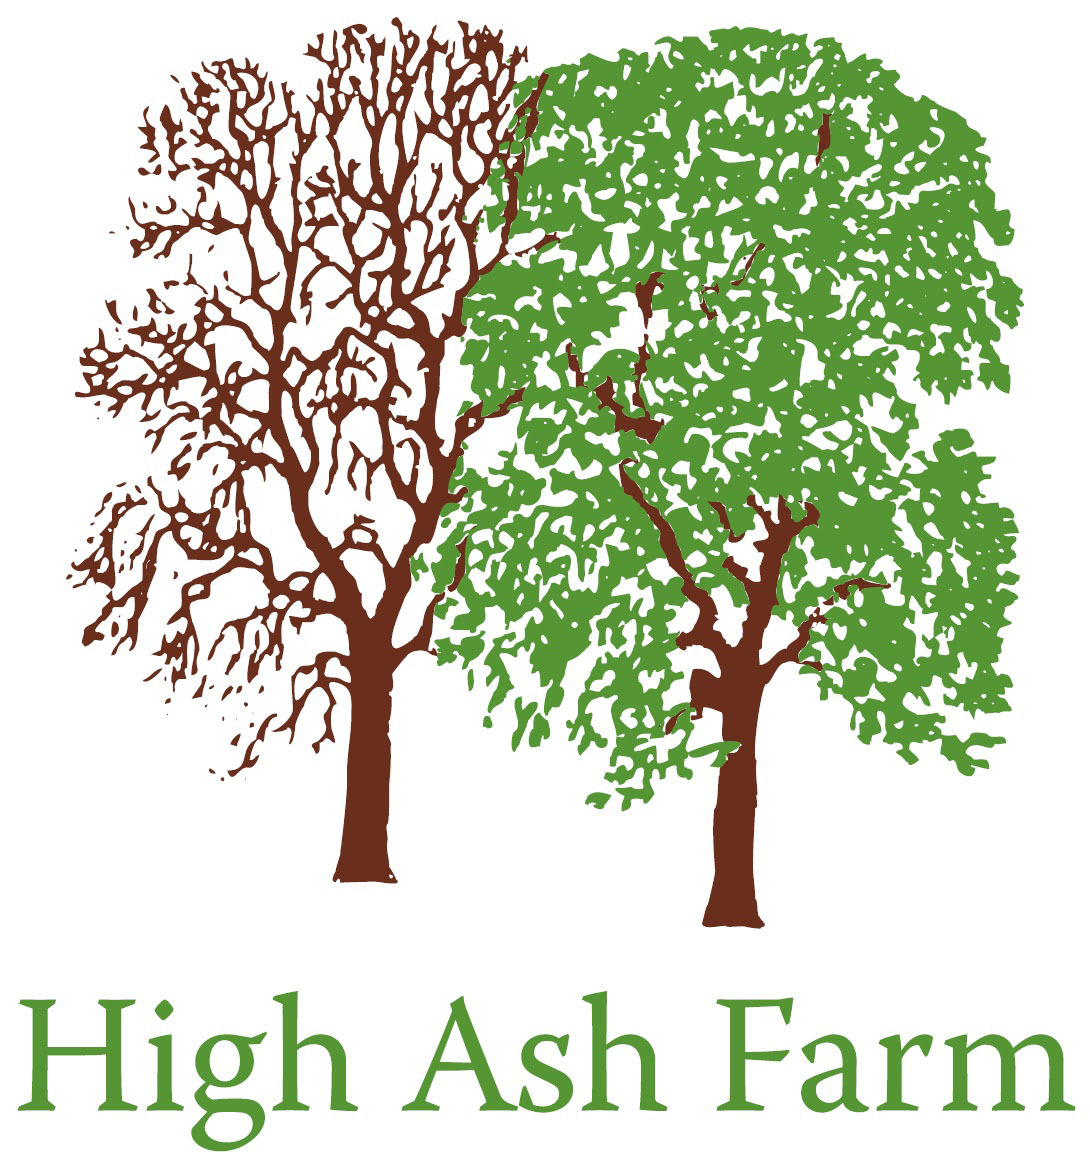 High Ash Farm logo